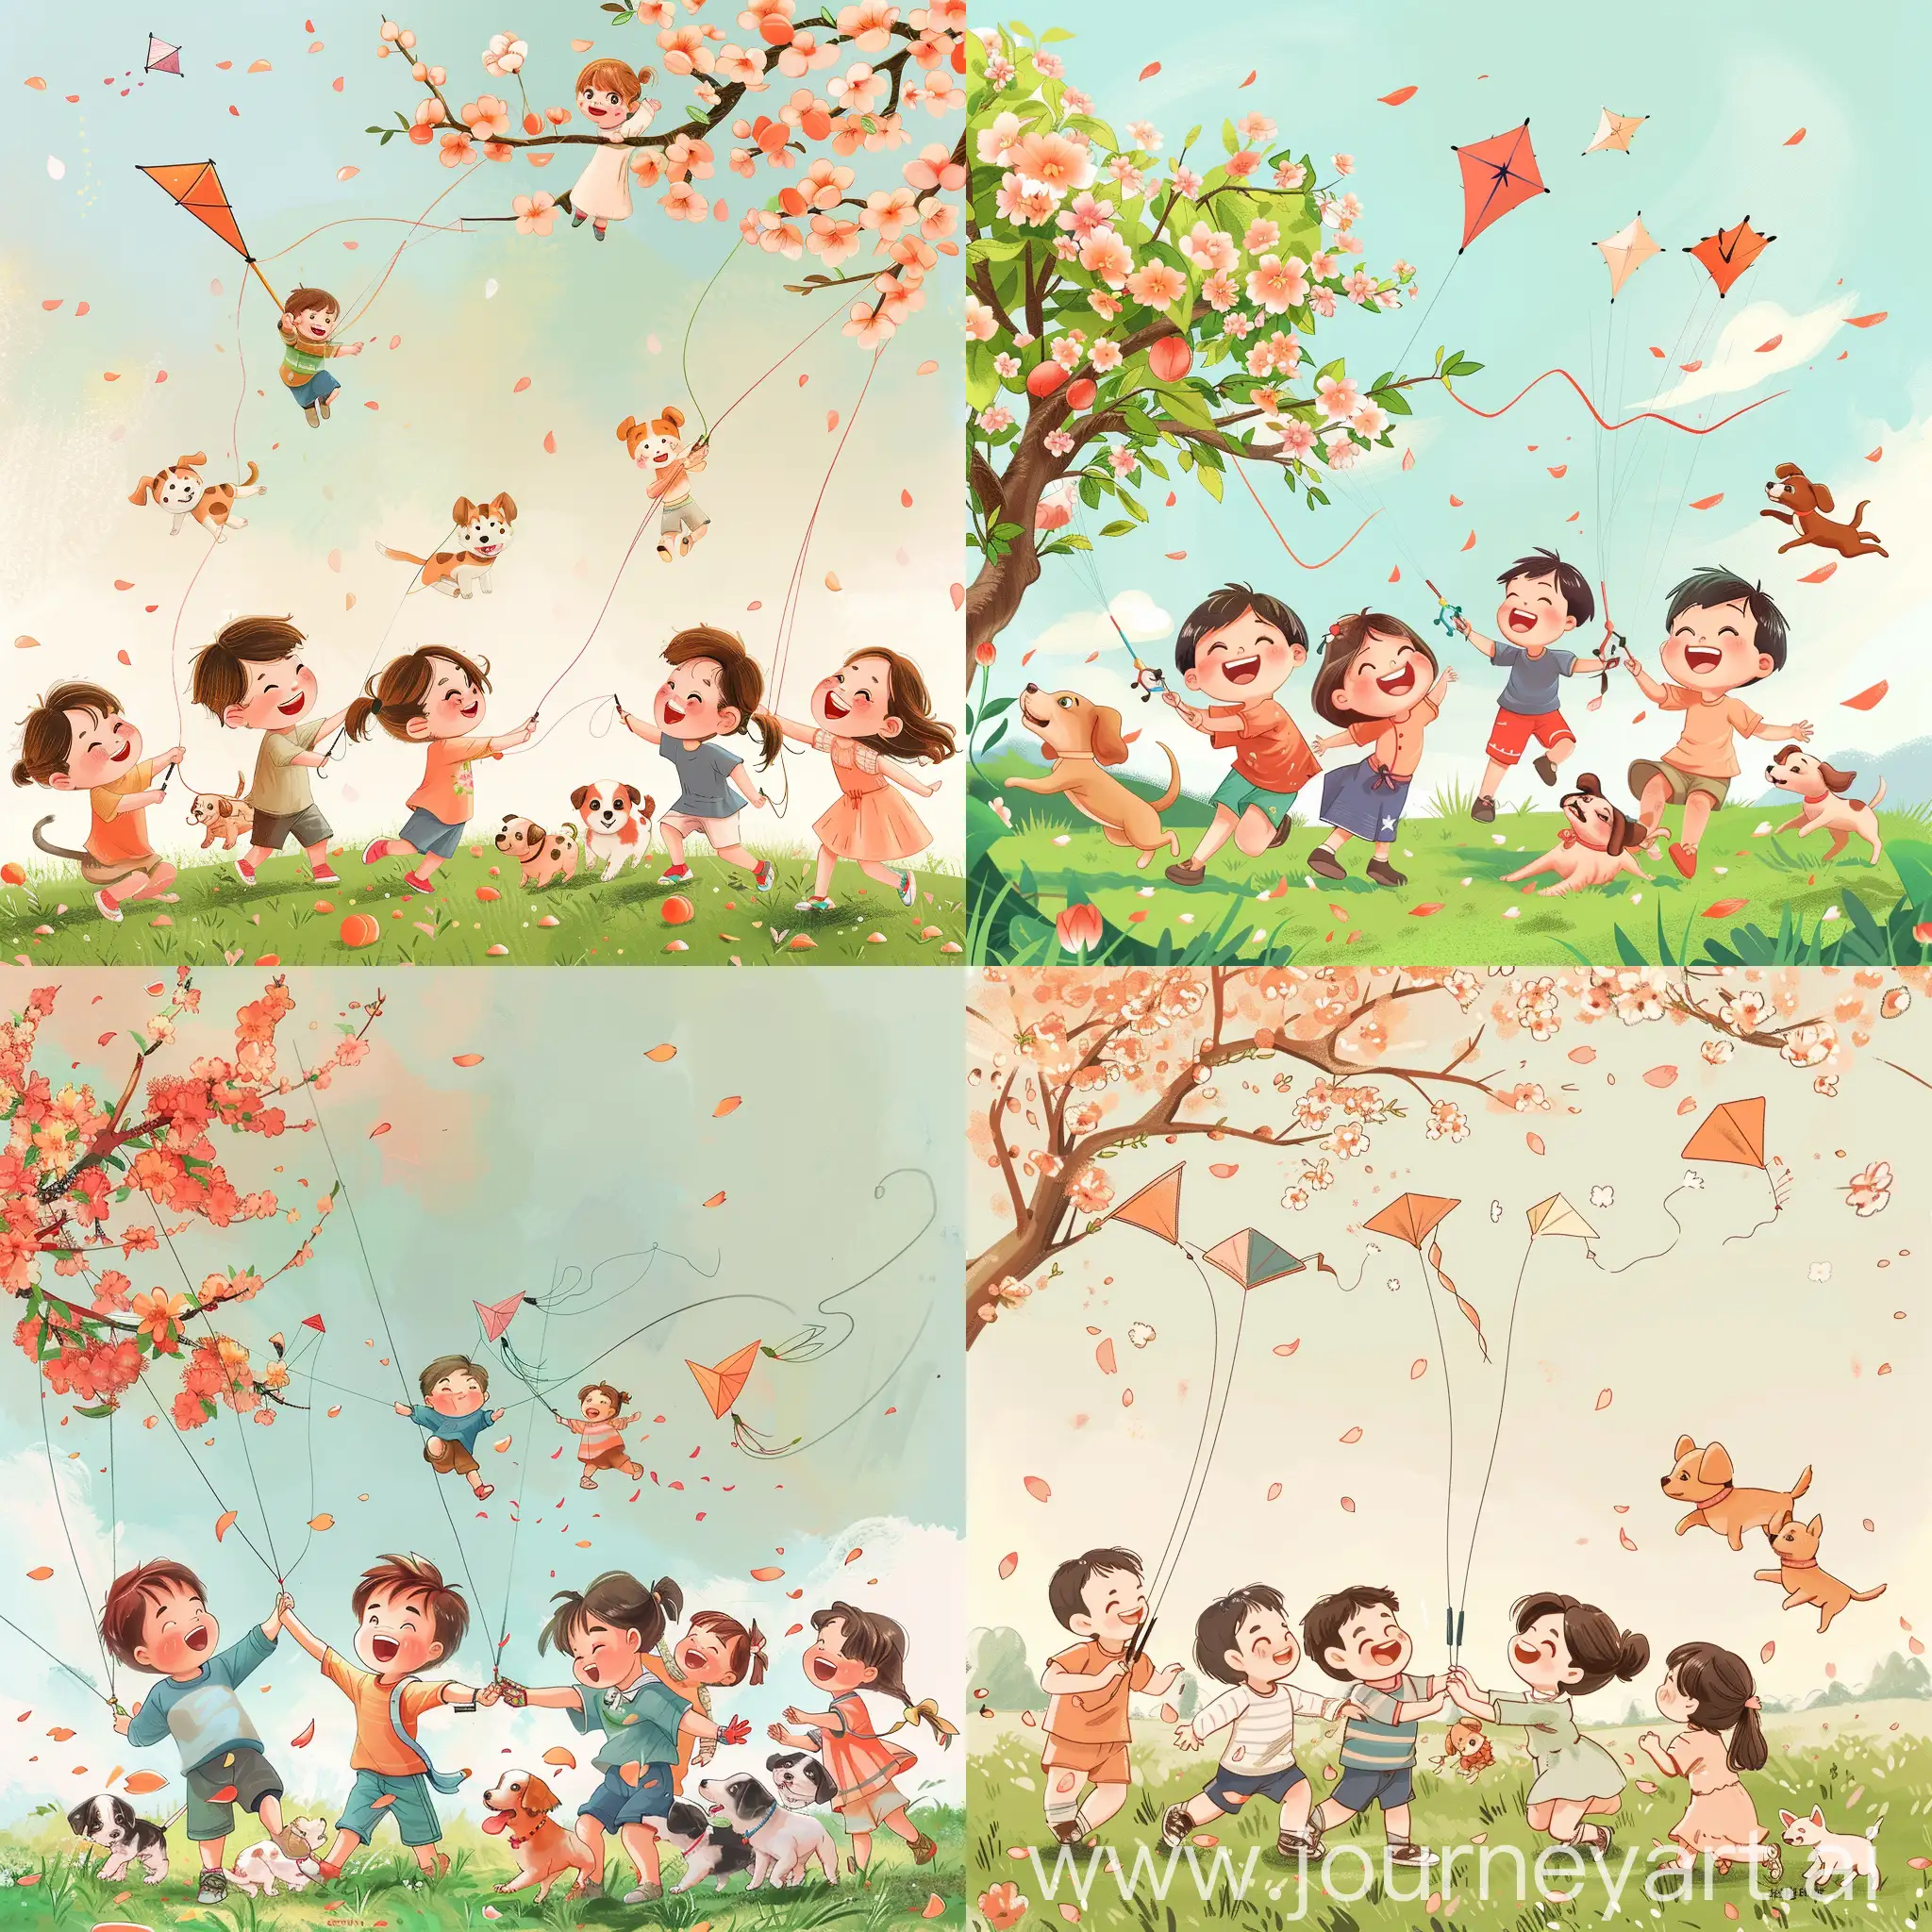 动漫风格，一群5岁的小朋友，两个小男孩，三个小女孩，在草地上放风筝，洋溢着笑容，身旁有几只小奶狗追着她们，有桃花，头发飘动